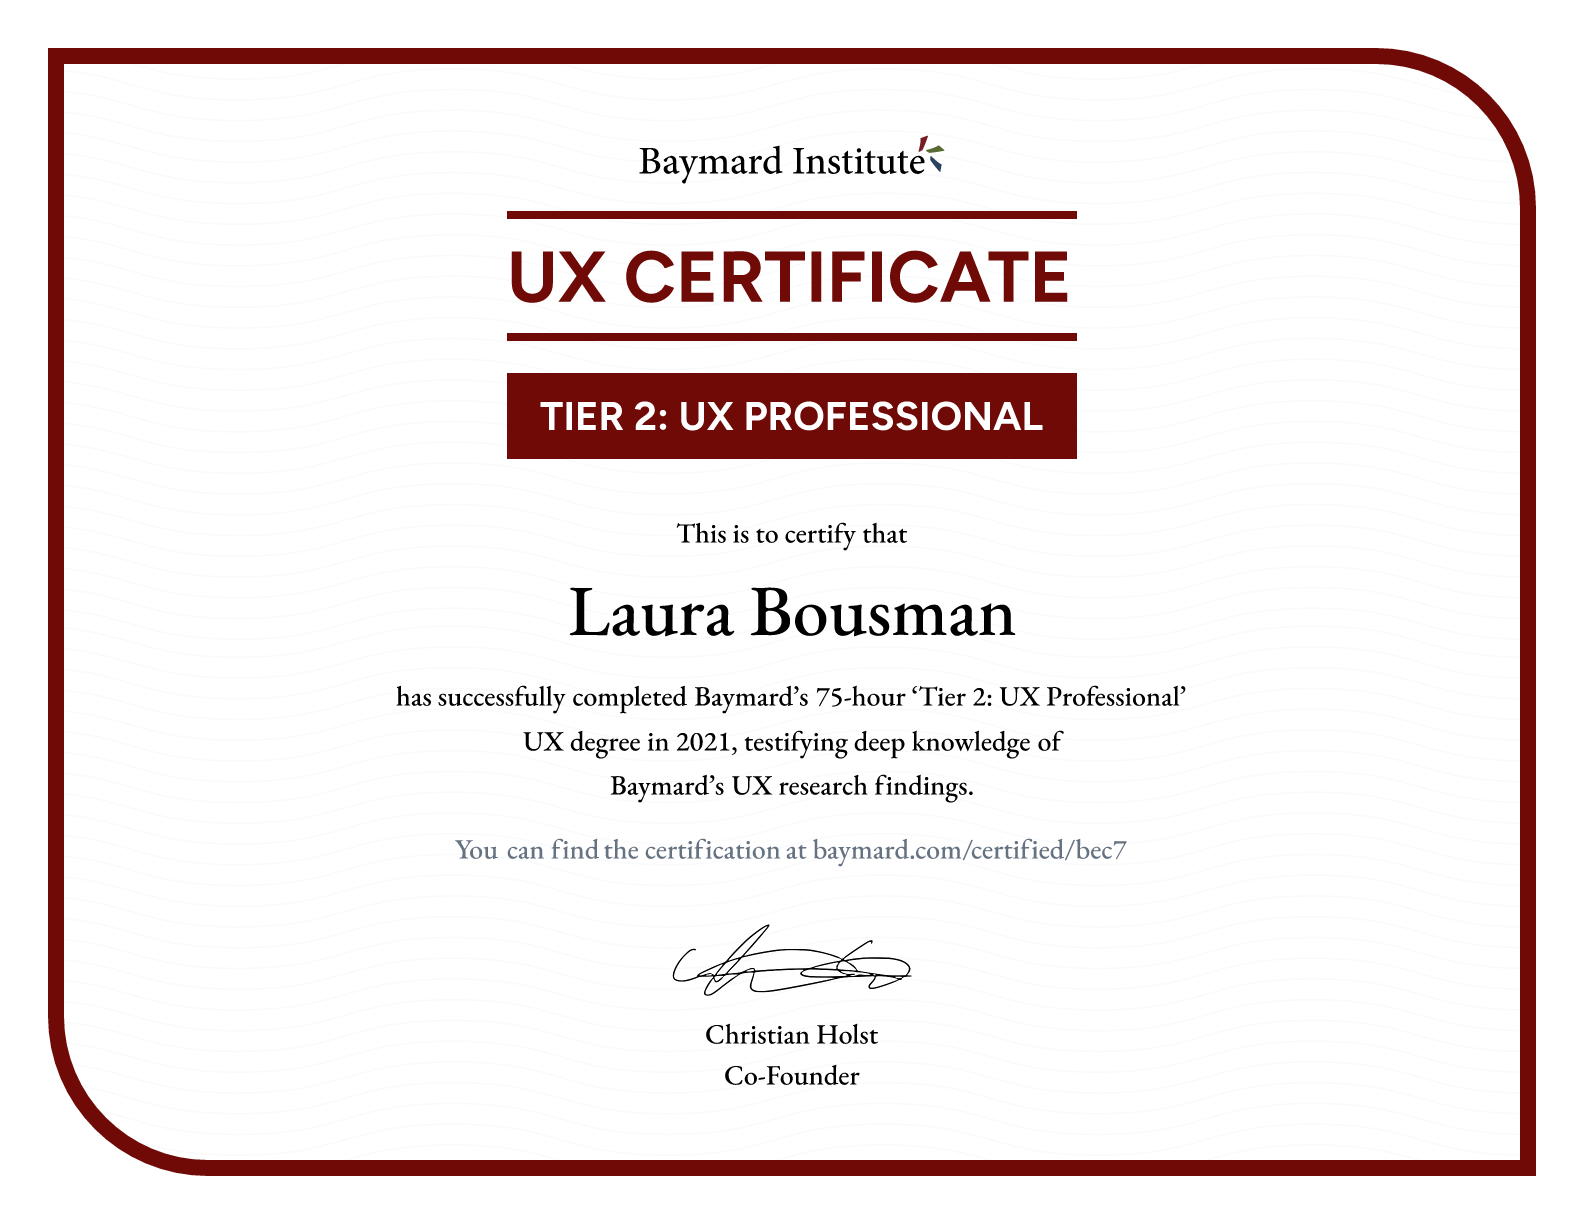 Laura Bousman’s certificate